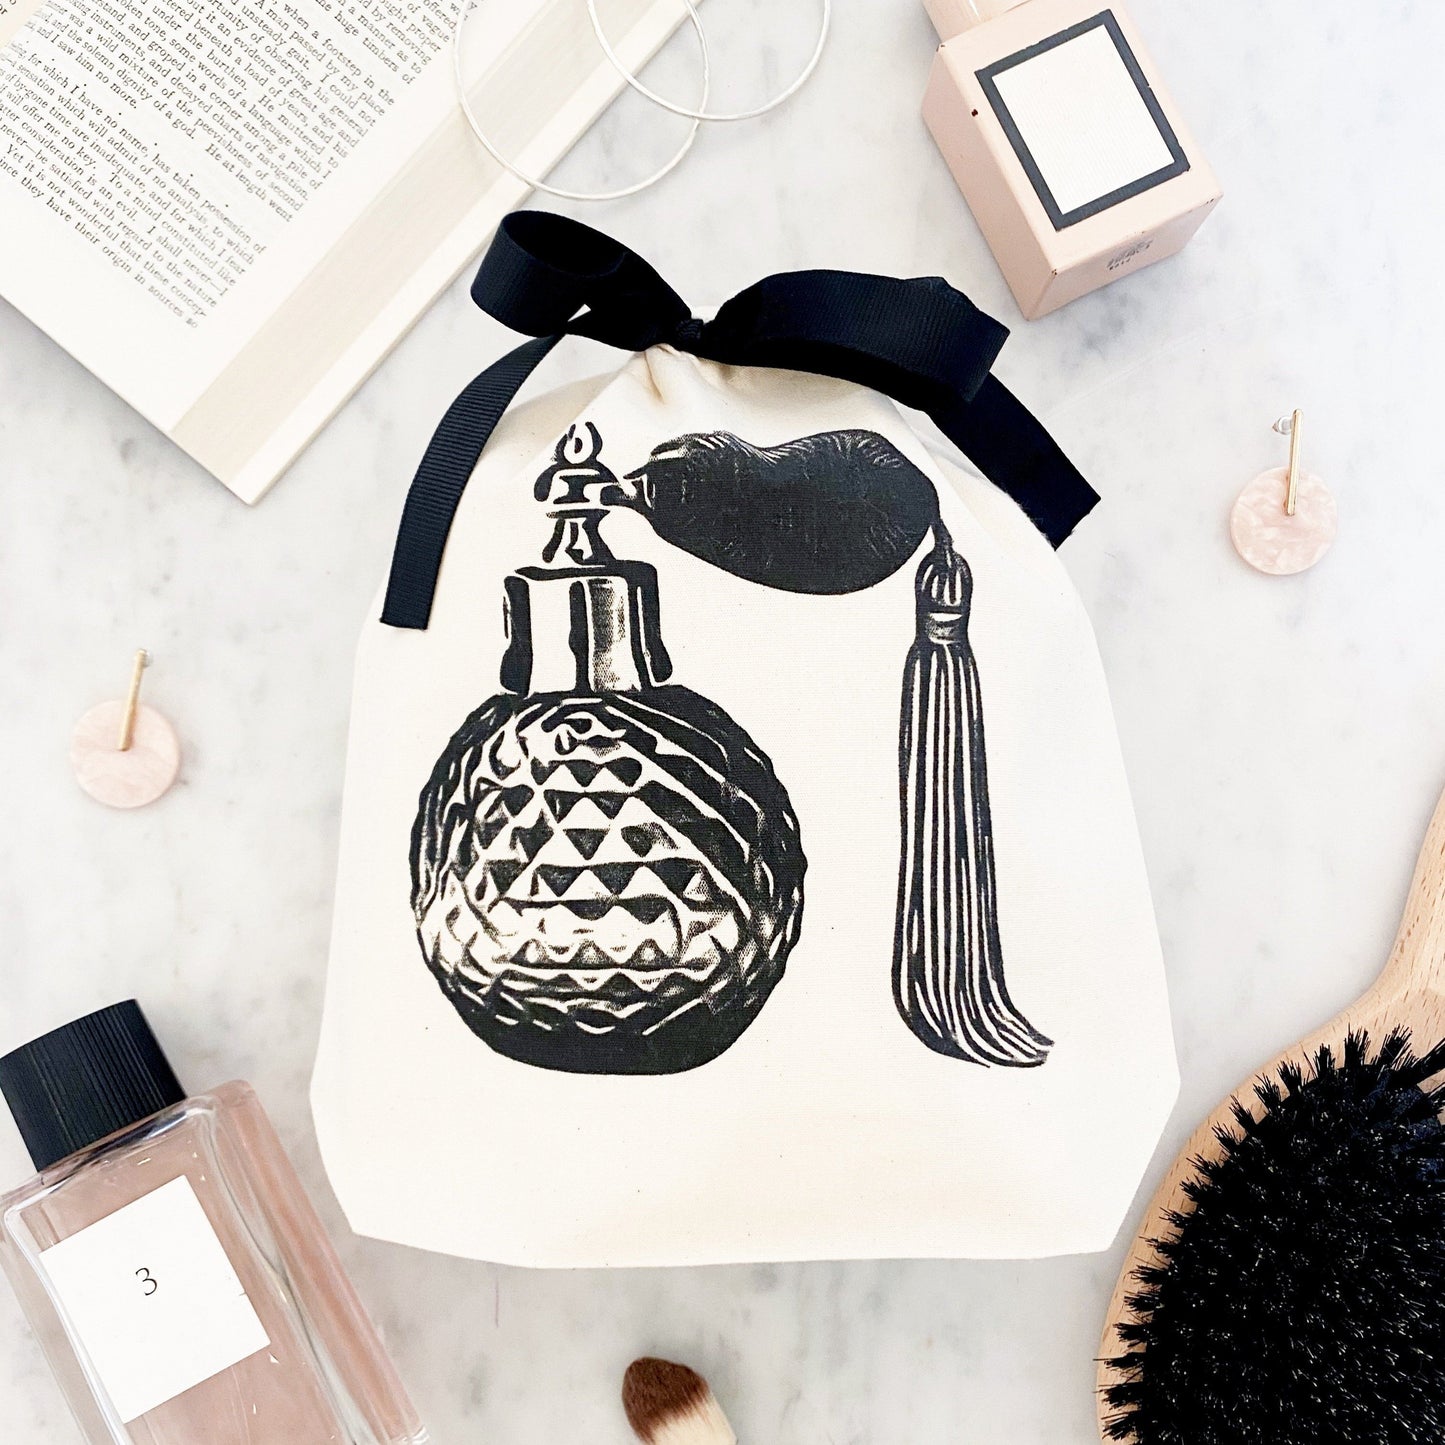 Túi nước hoa với hương thơm dịu nhẹ sẽ mang đến cho bạn cảm giác thoải mái và tự tin suốt cả ngày. Điều này sẽ giúp bạn tạo ra một ấn tượng đẹp với những người xung quanh. Hãy xem hình ảnh để tìm hiểu nhiều hơn về các loại nước hoa cao cấp có sẵn trong túi của bạn.